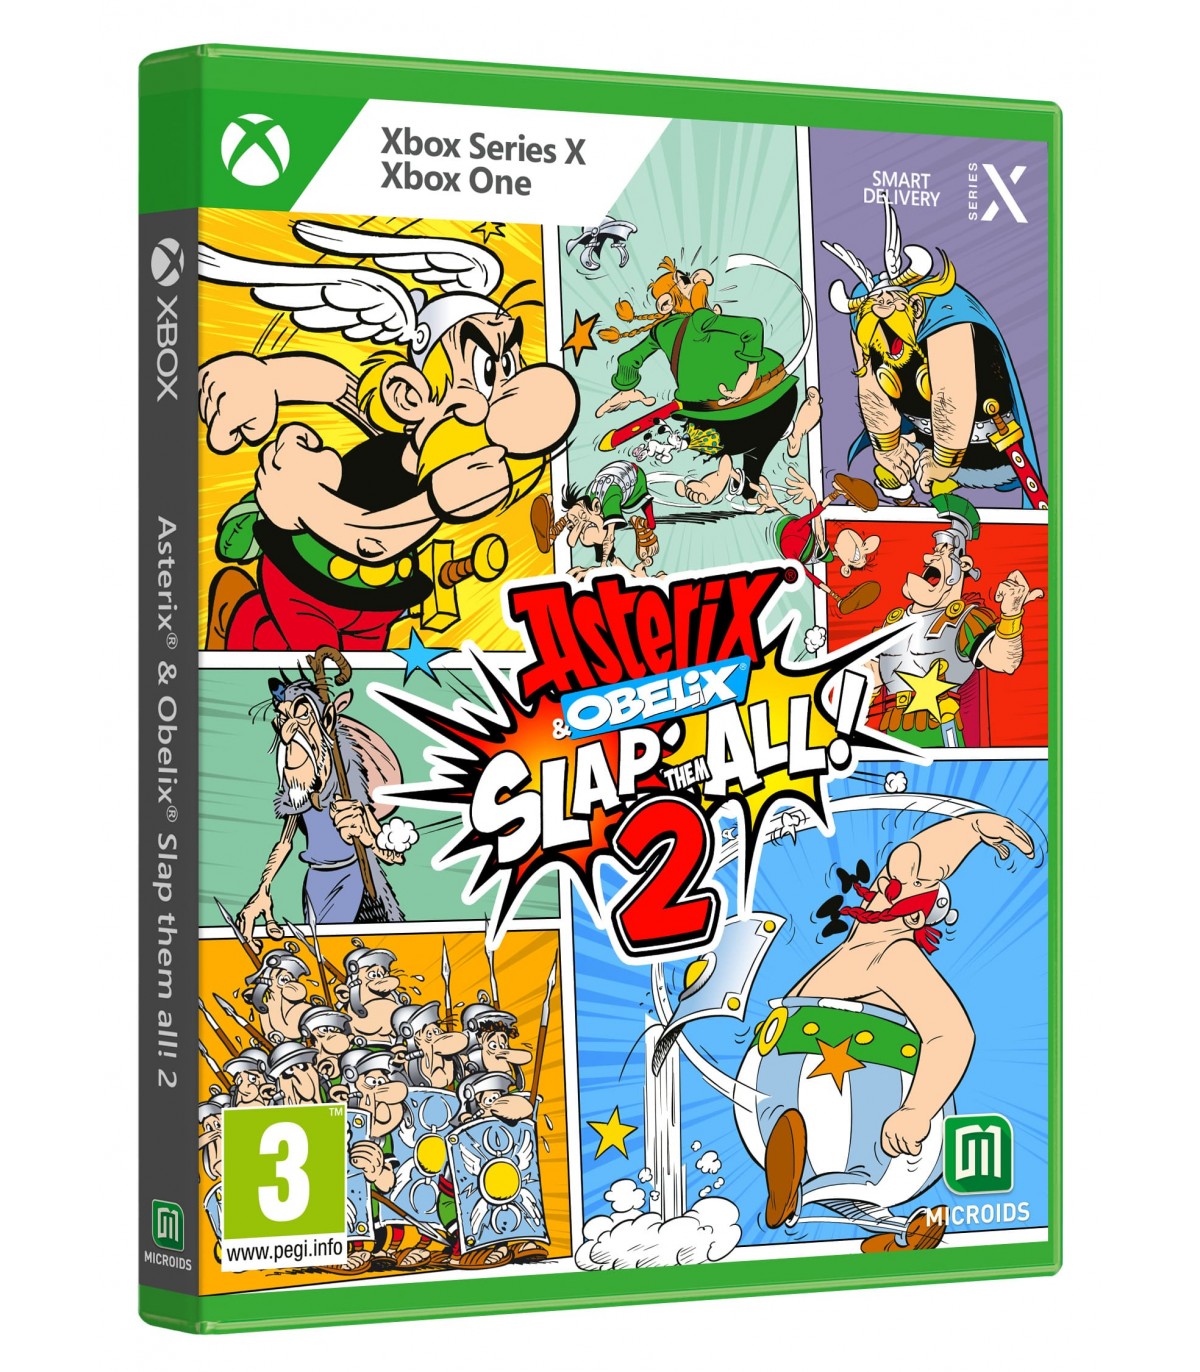 Xbox Series X Asterix & Obelix Slap Them All 2 - Disponibile in 2/3 giorni lavorativi Plaion